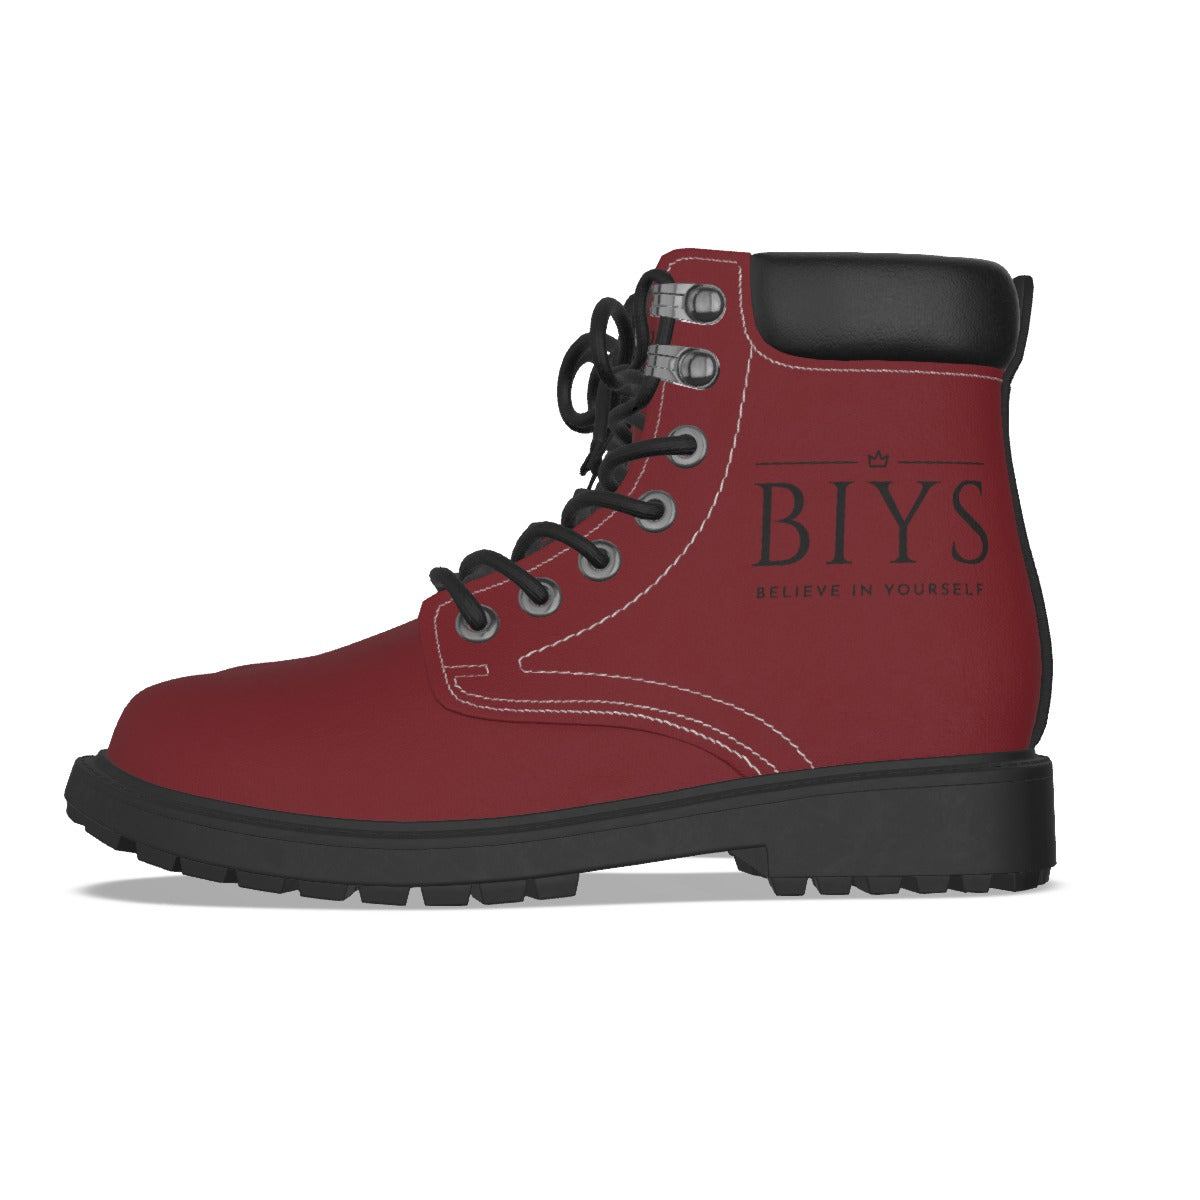 BIYS Men's Dark red Boots